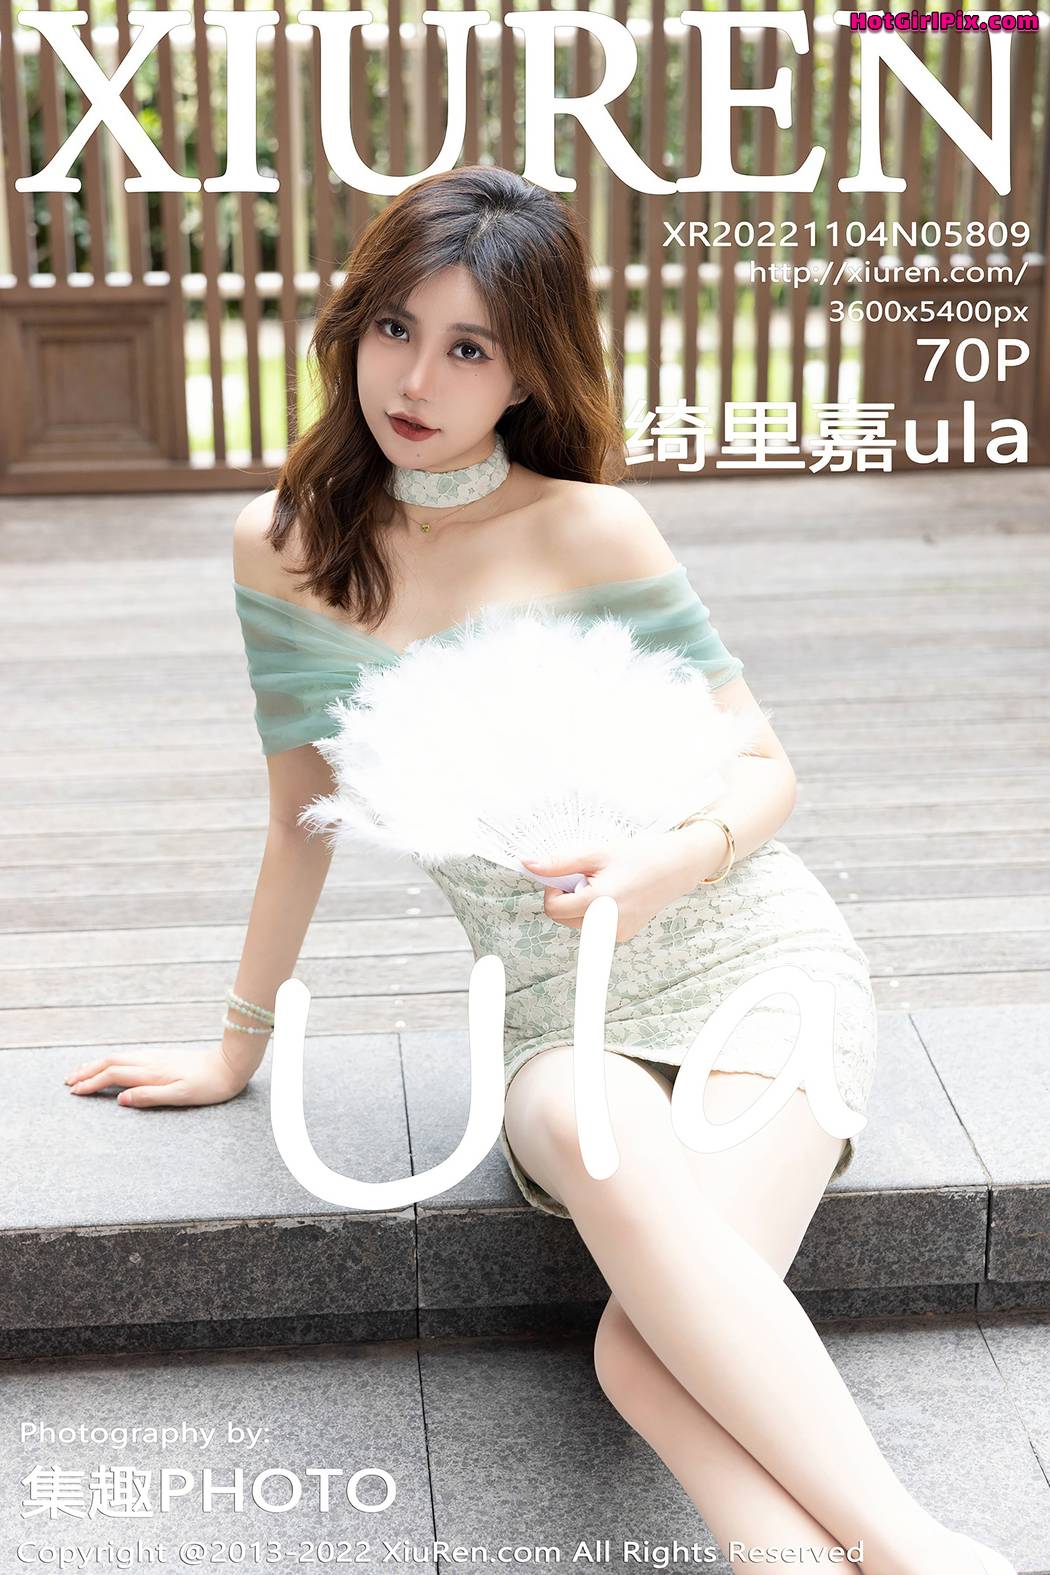 [XIUREN] No.5809 Qi Li Jia 绮里嘉ula Cover Photo